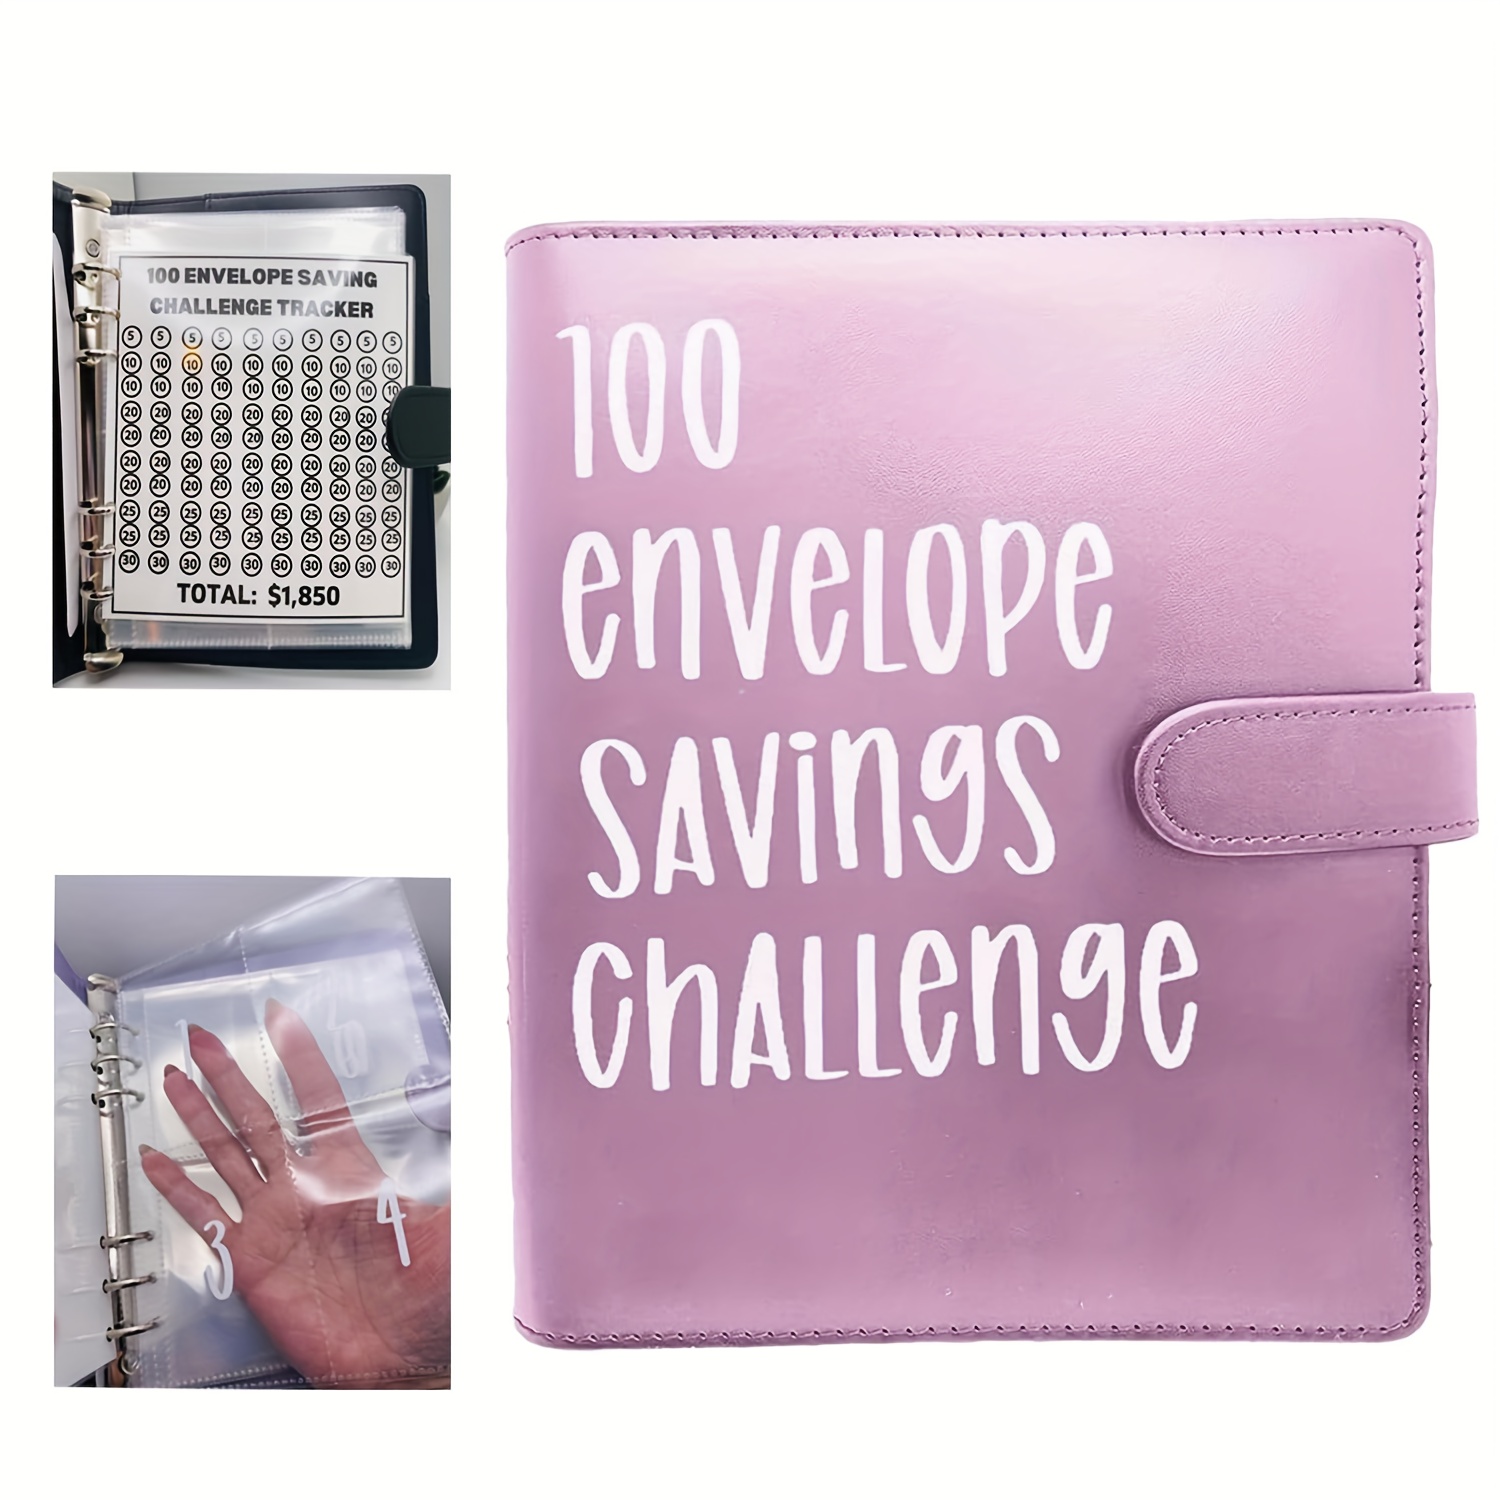 Carpeta de desafío de ahorro de dinero de 100 sobres, carpeta de desafío de  100 sobres, divertido y organizado libro de ahorro de dinero para ahorrar